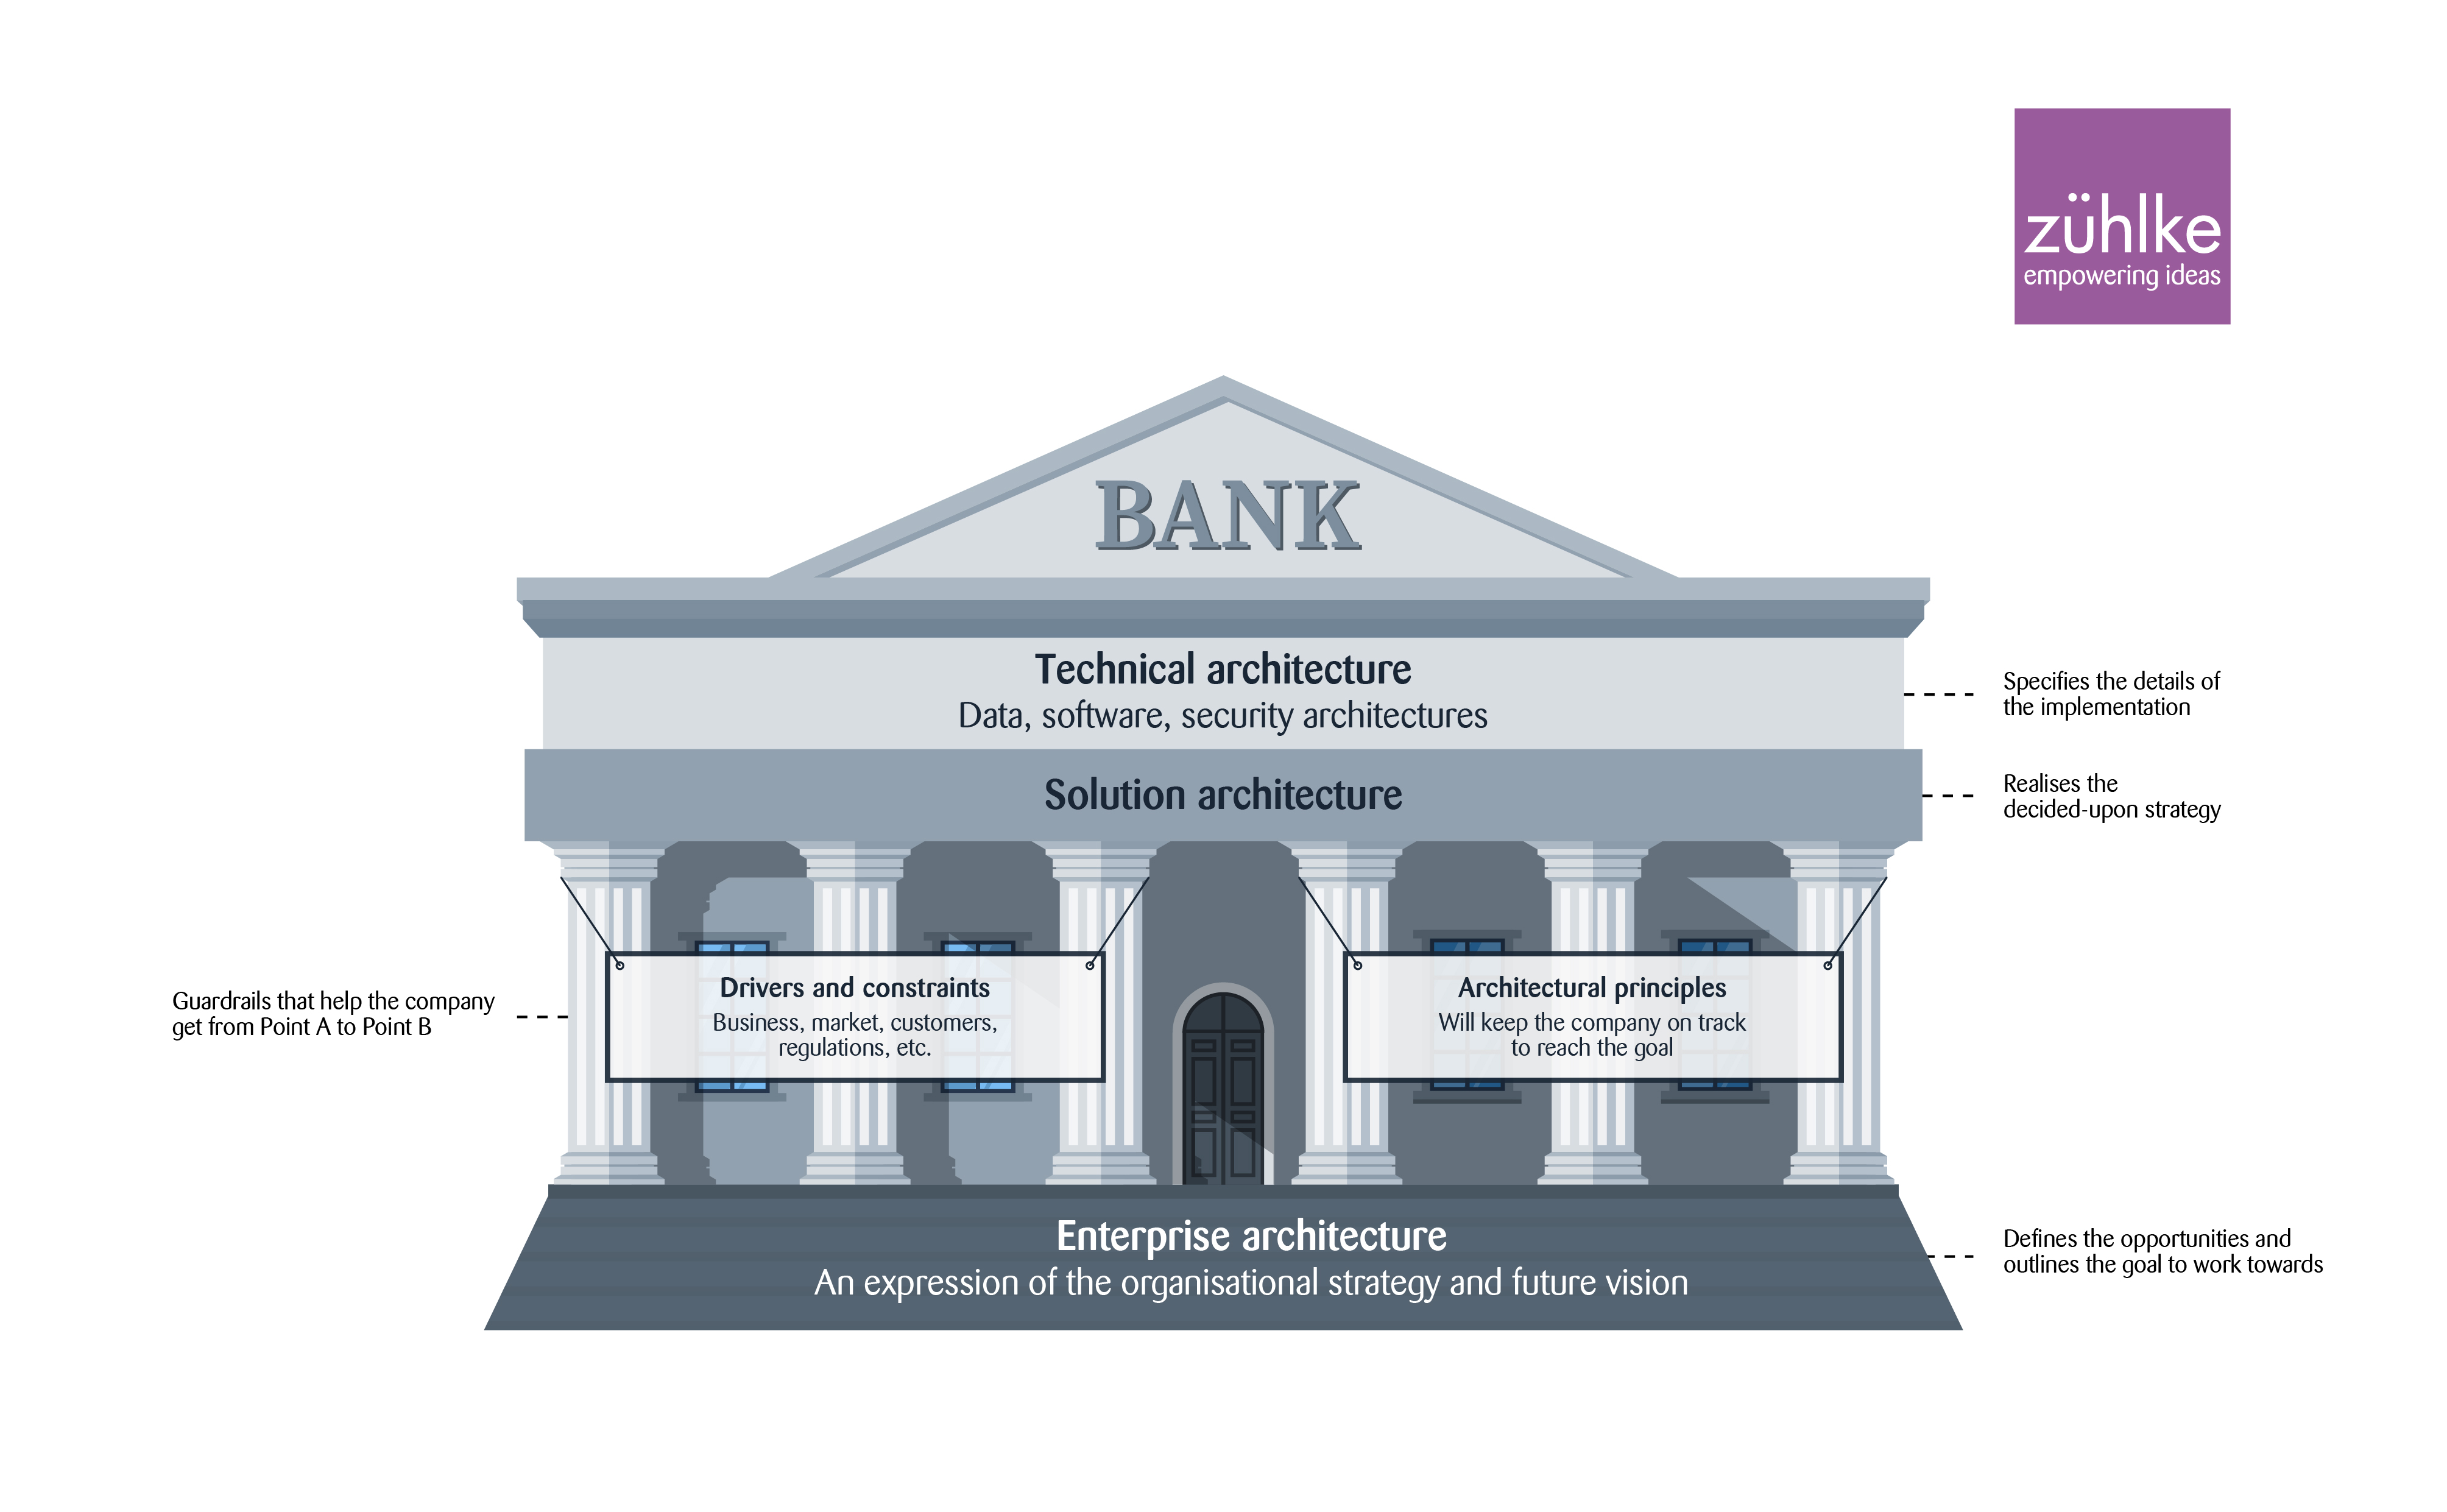 Banking architecture visualisation